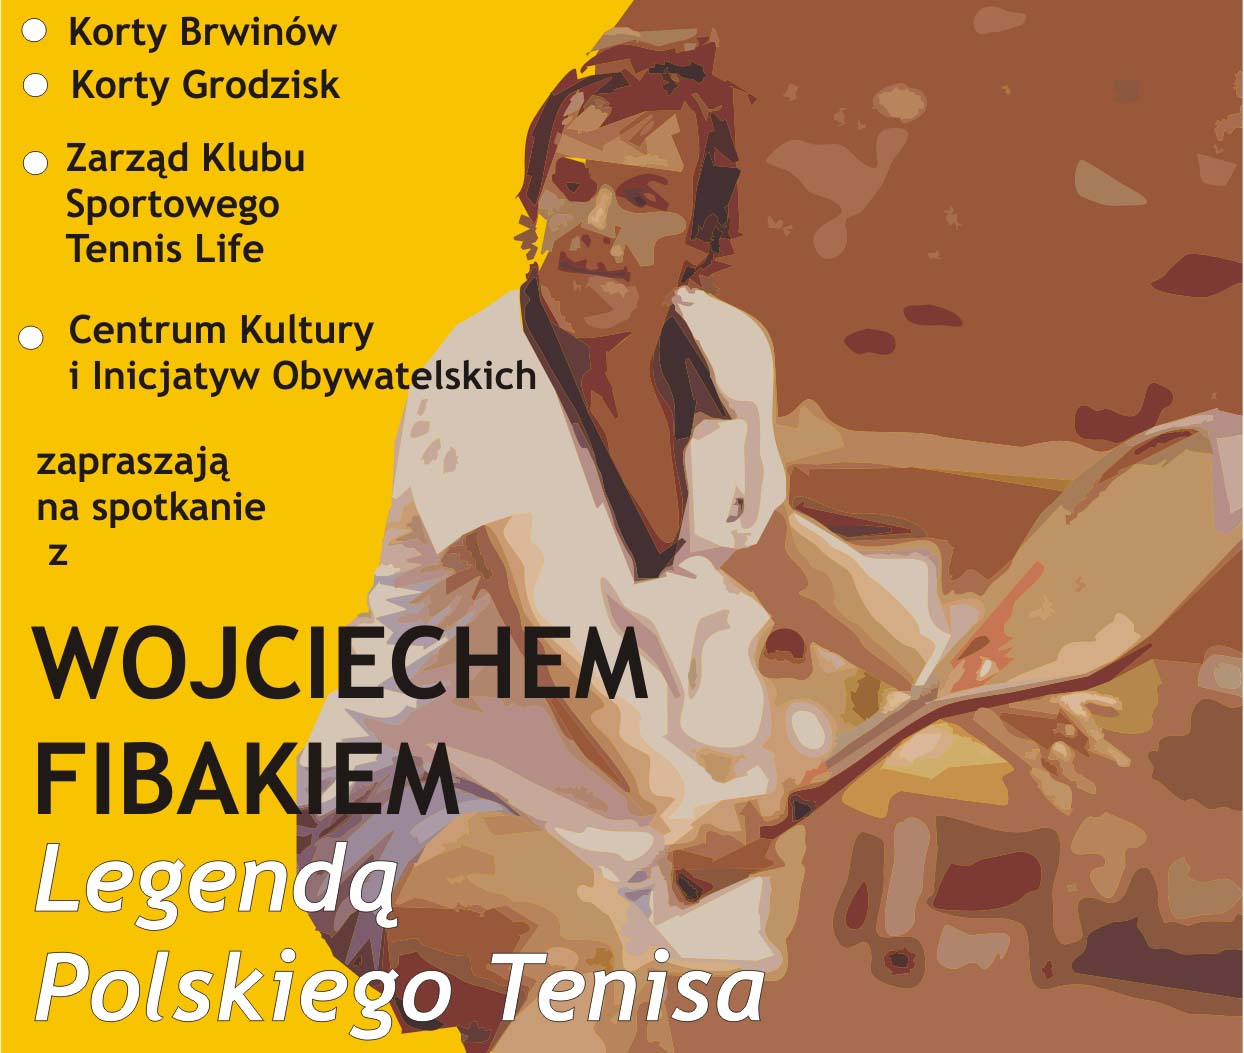 Wojciechem Fibakiem Legenda Tenisa